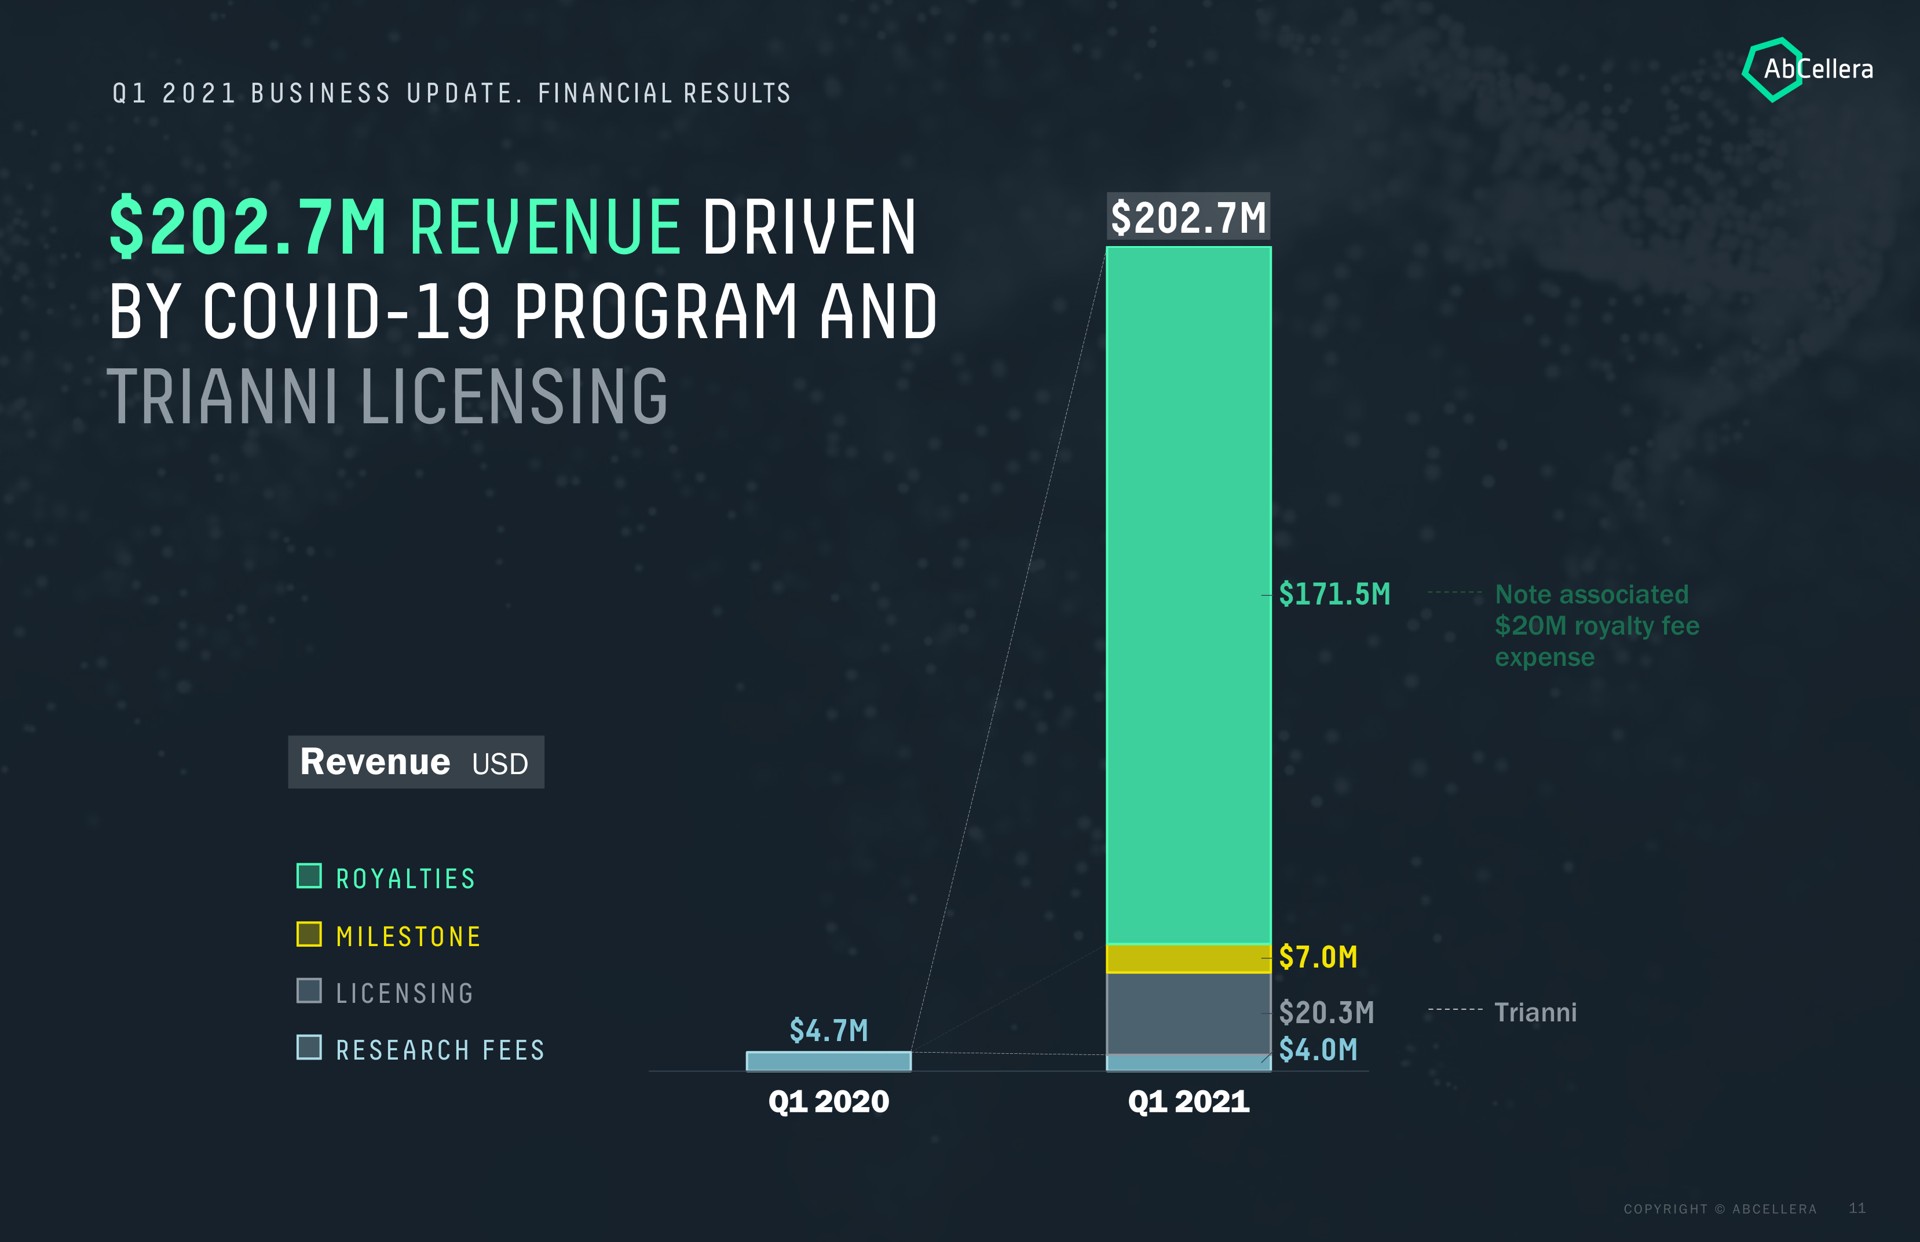 revenue driven by covid program and licensing revenue | AbCellera